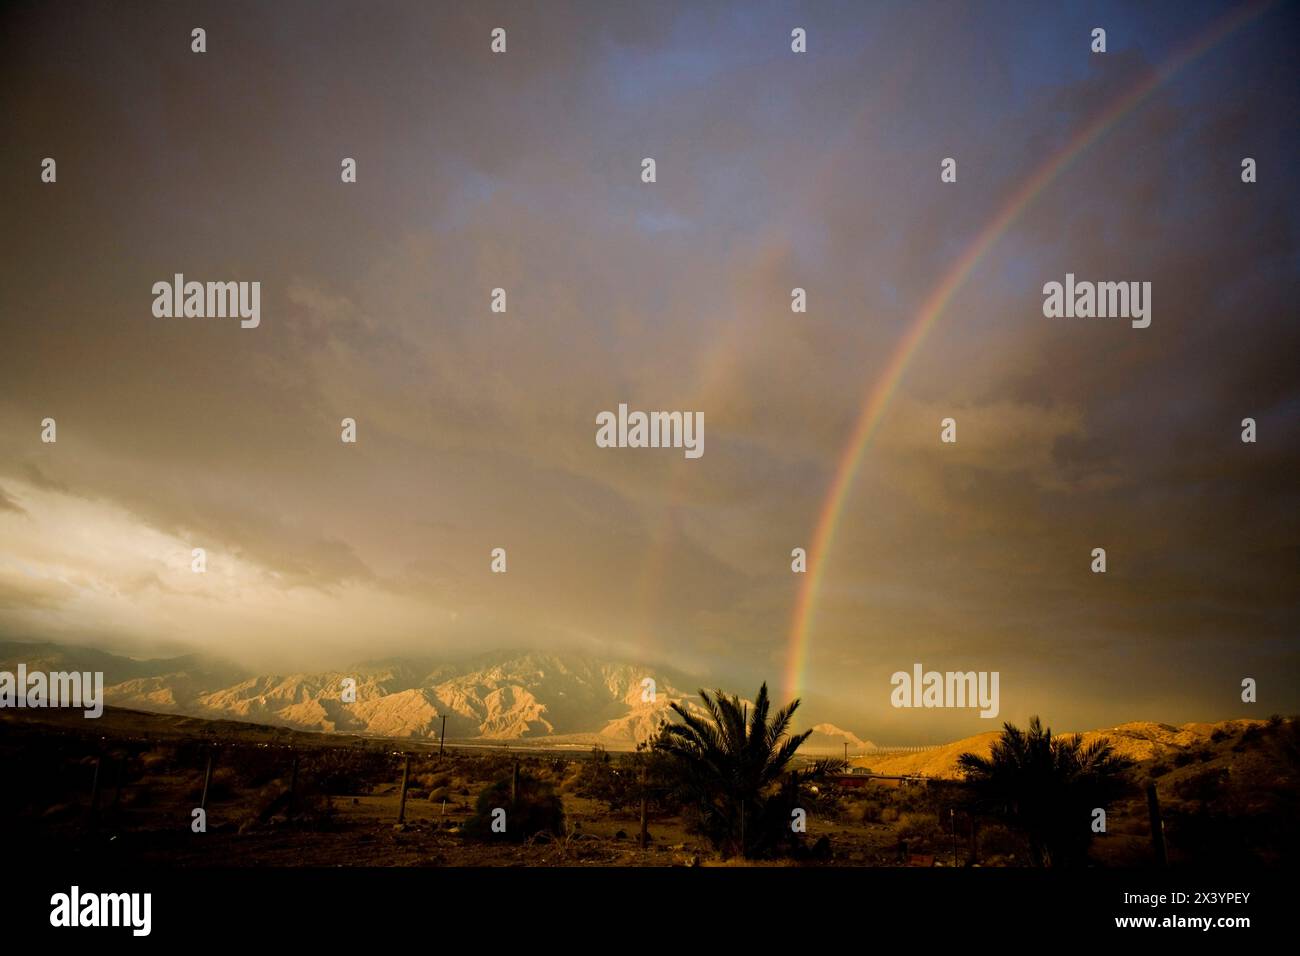 Archi arcobaleno sulle montagne desertiche baciate dalla tempesta, uno spettacolo naturale. Foto Stock